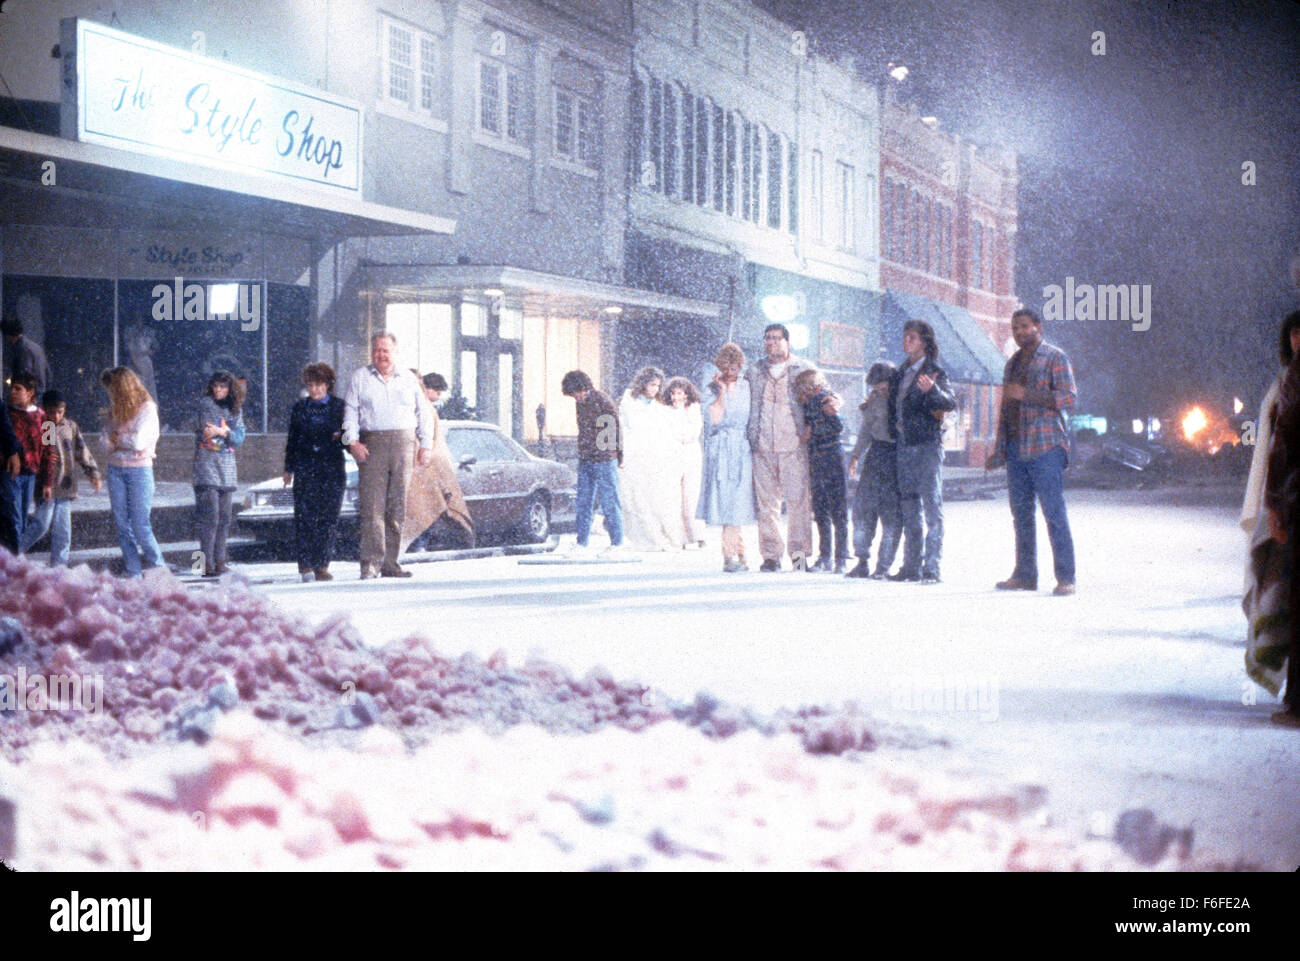 Aug 06, 1988 ; Hollywood, CA, USA ; Théâtre de l'horreur film de science-fiction "Le Blob" réalisé par Chuck Russell. Banque D'Images